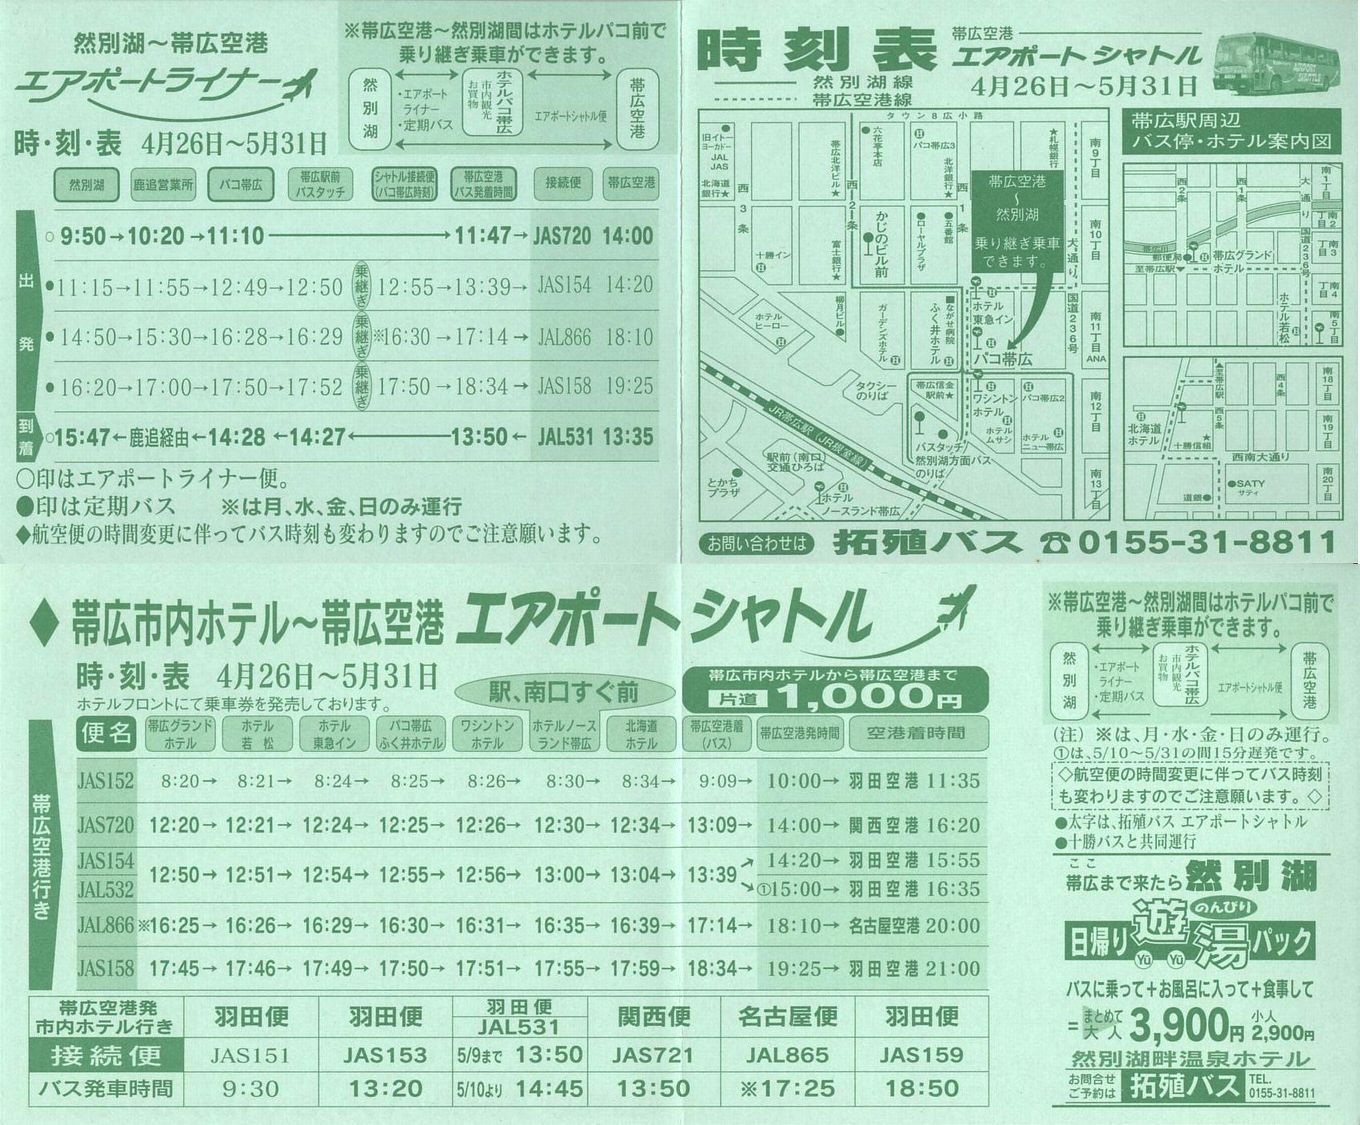 1999-04-26現在_北海道拓殖バス_帯広空港連絡バス時刻表